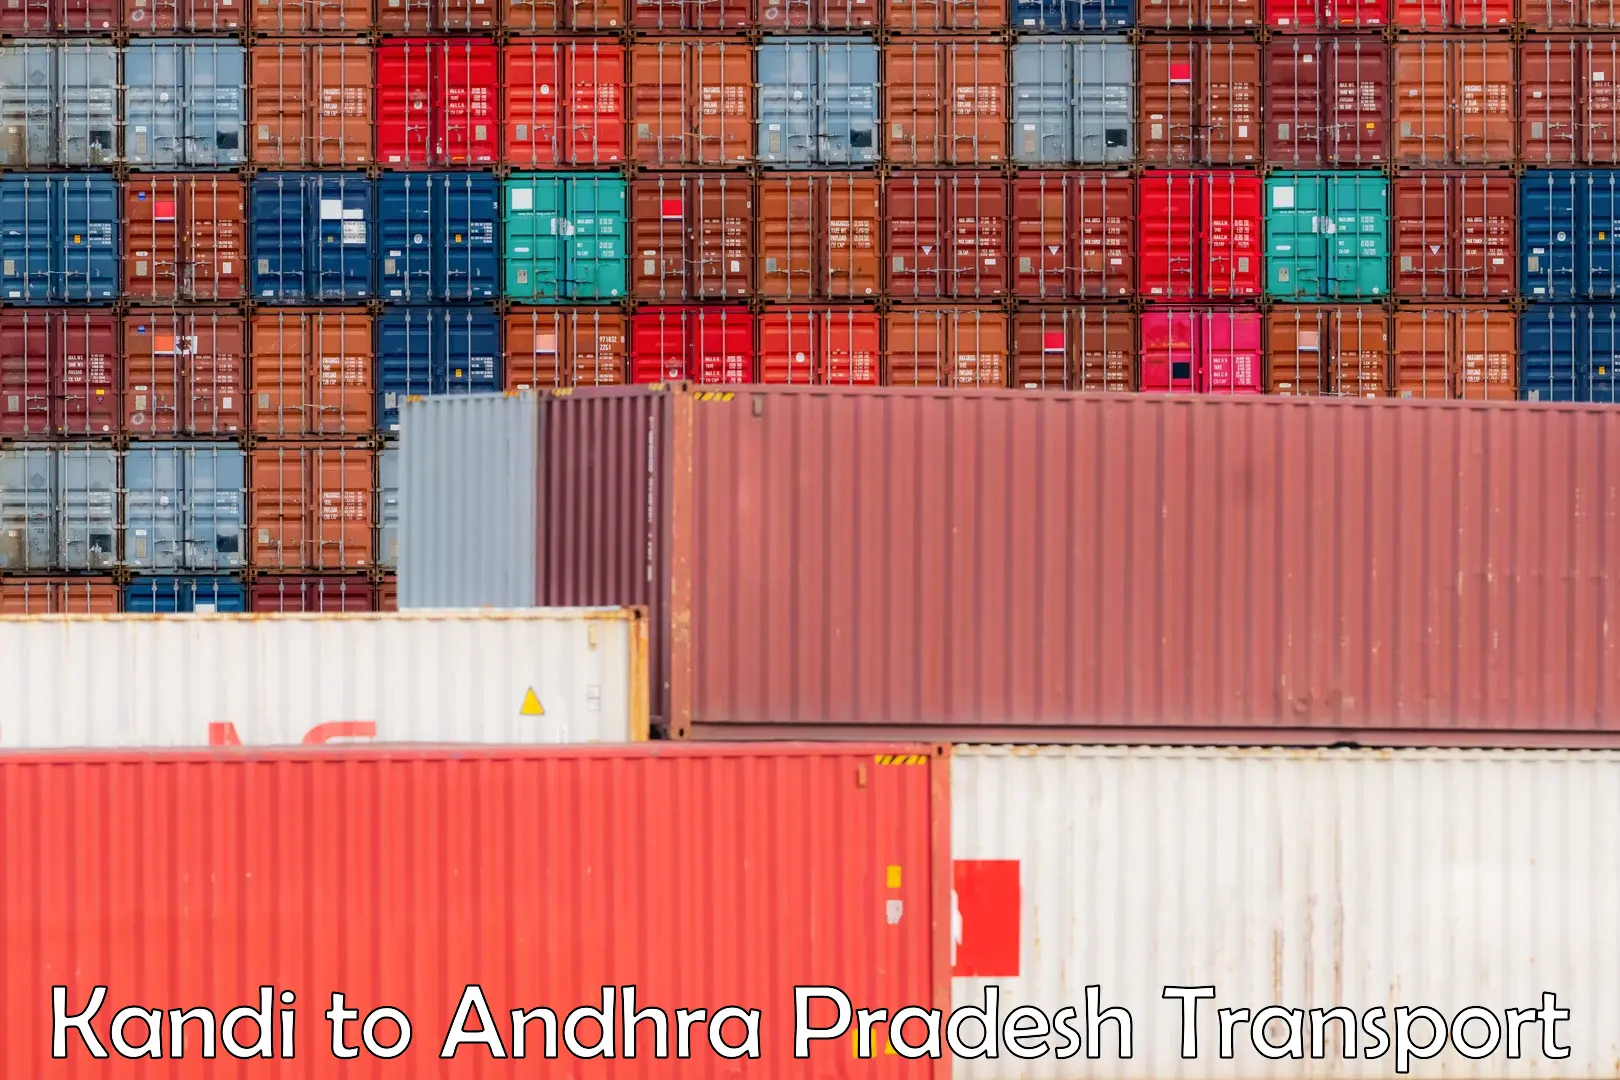 Furniture transport service Kandi to Andhra Pradesh